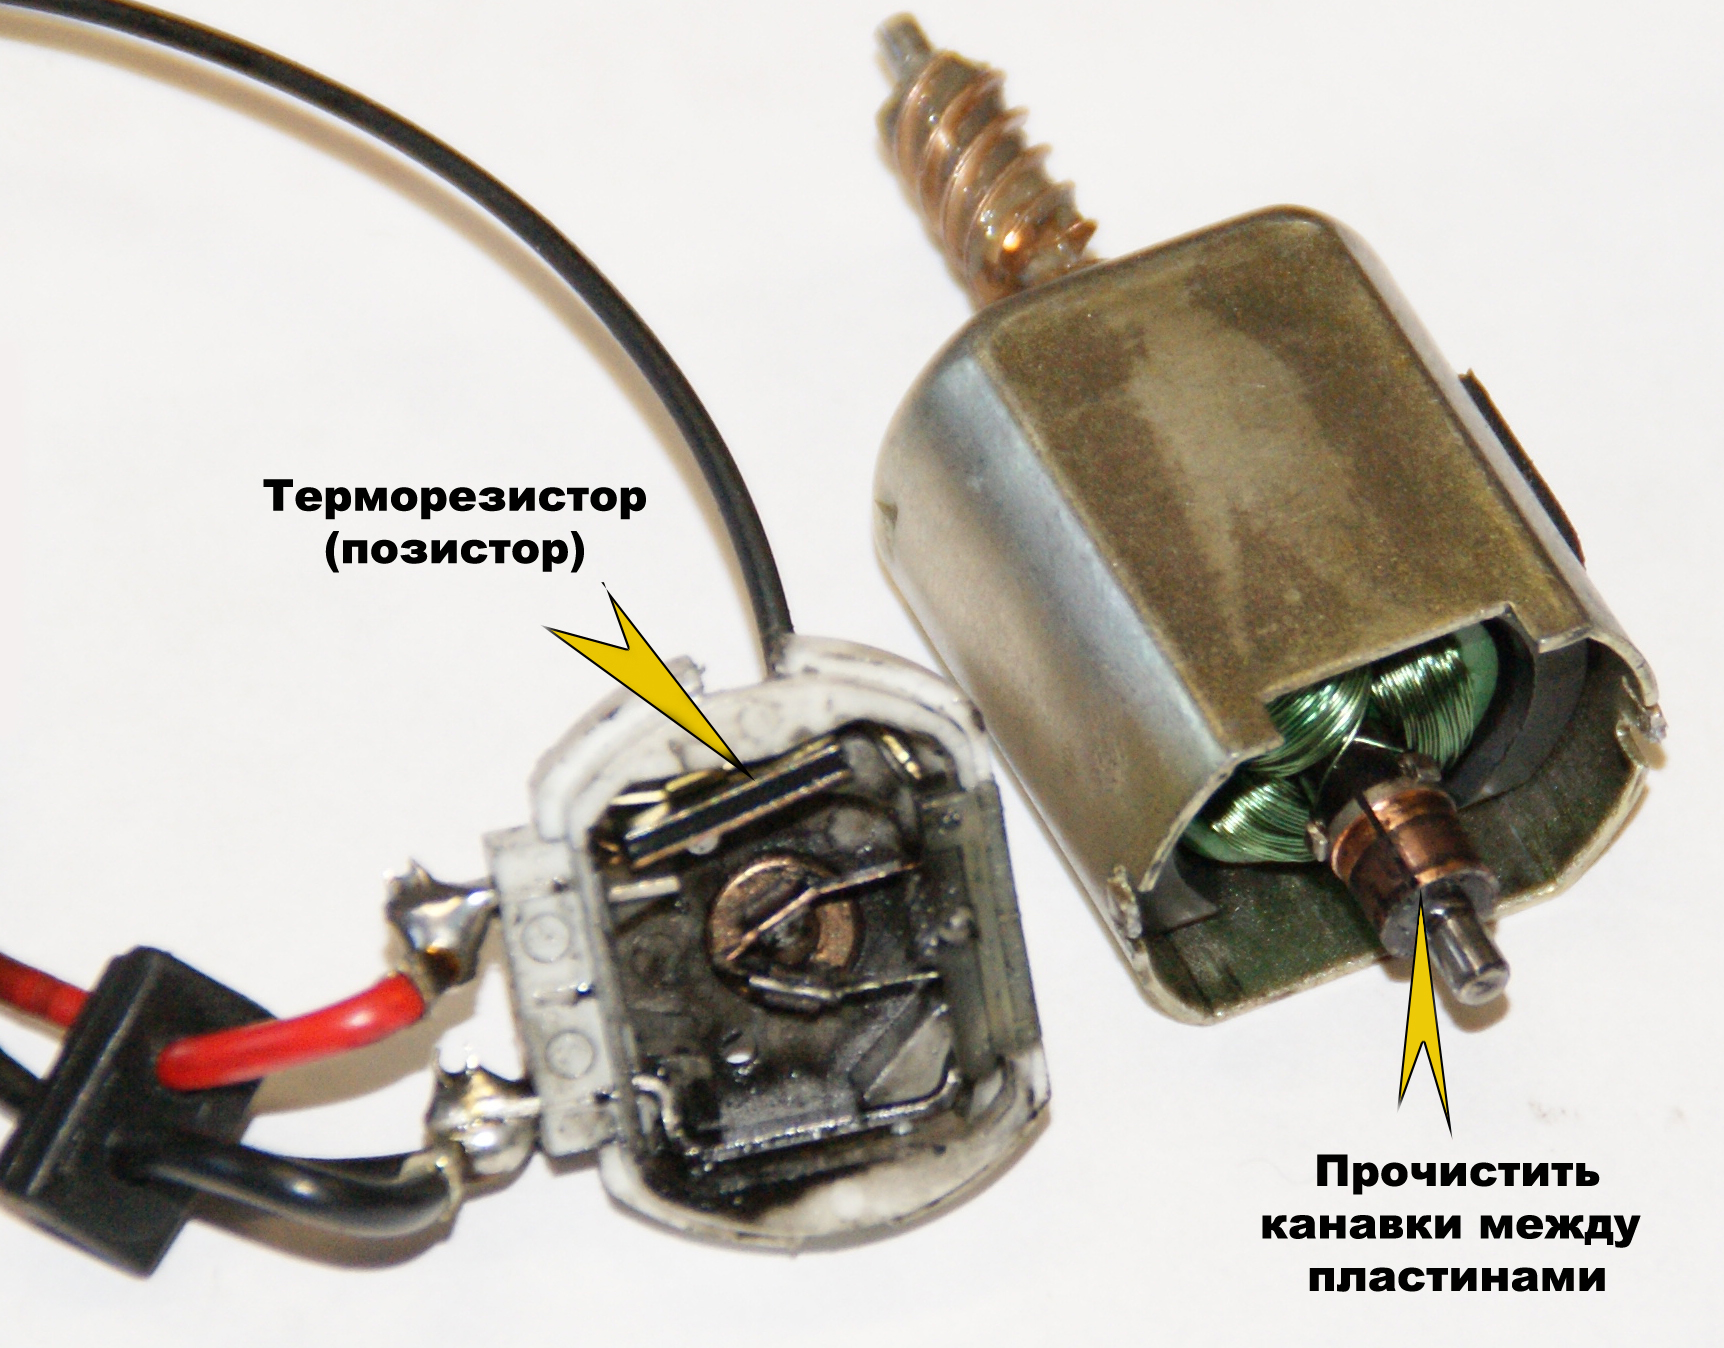 Терморезистор: устройство, принцип работы, назначение, виды